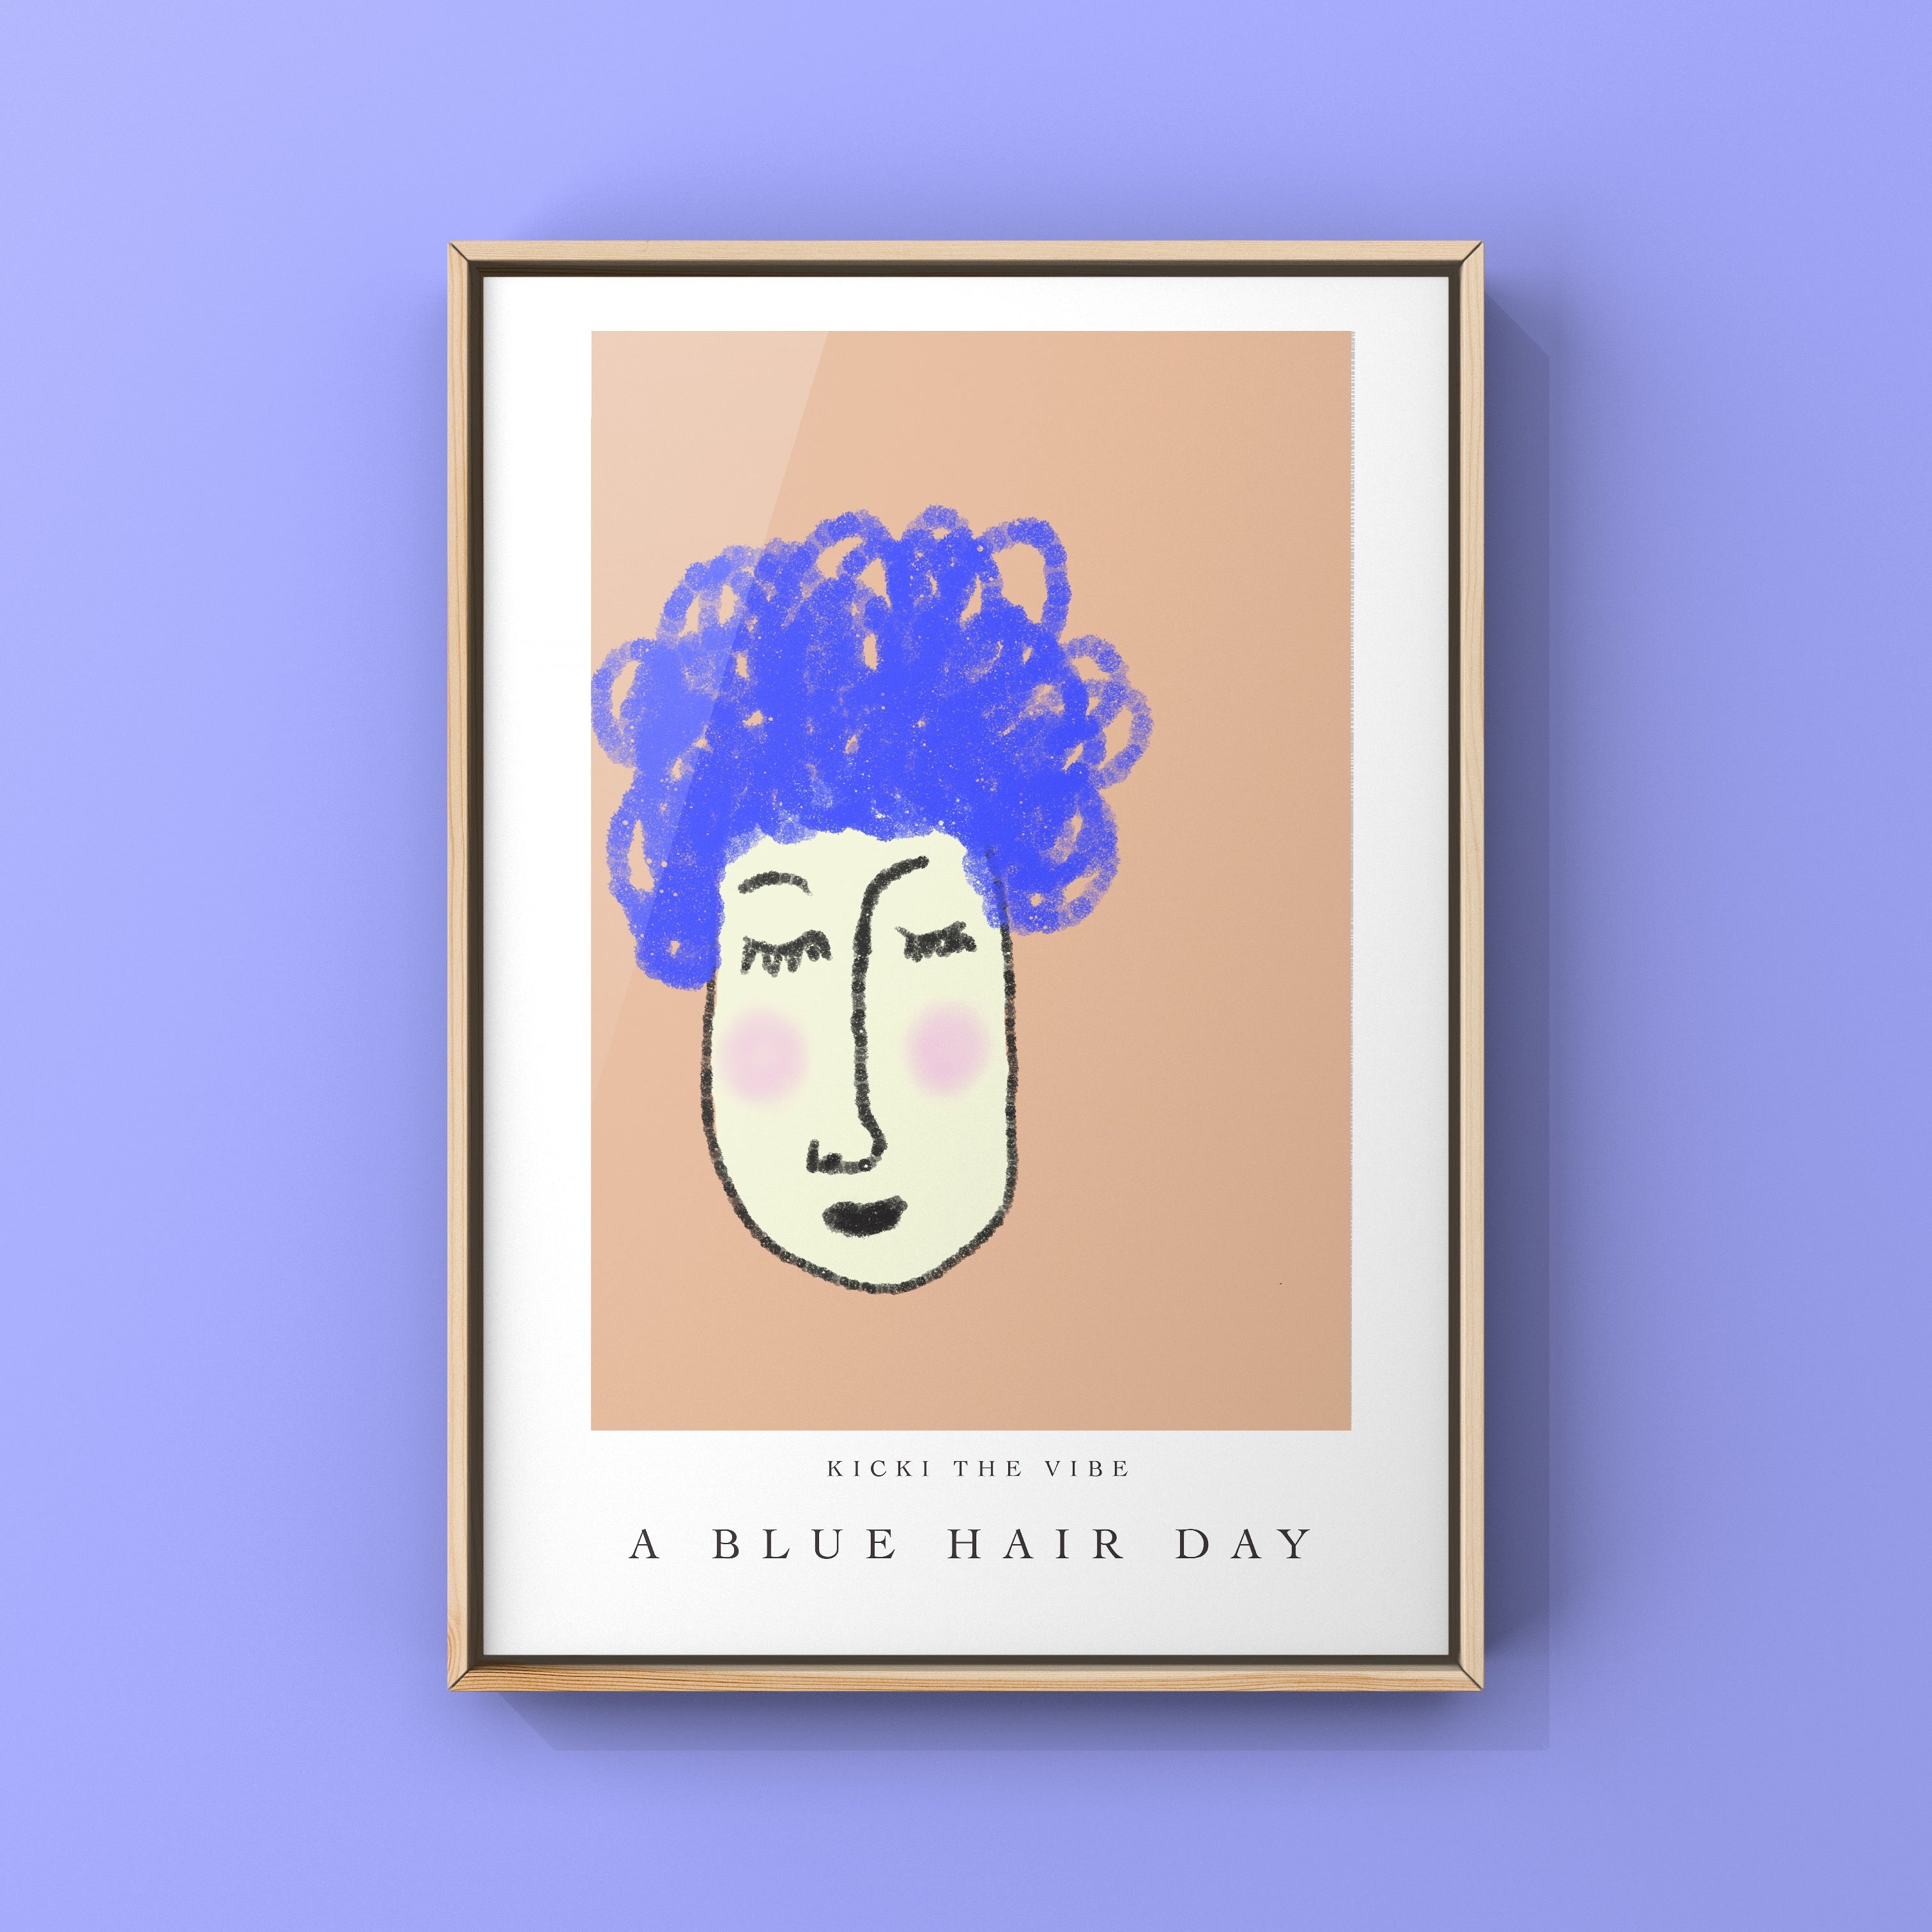 A blue hair day